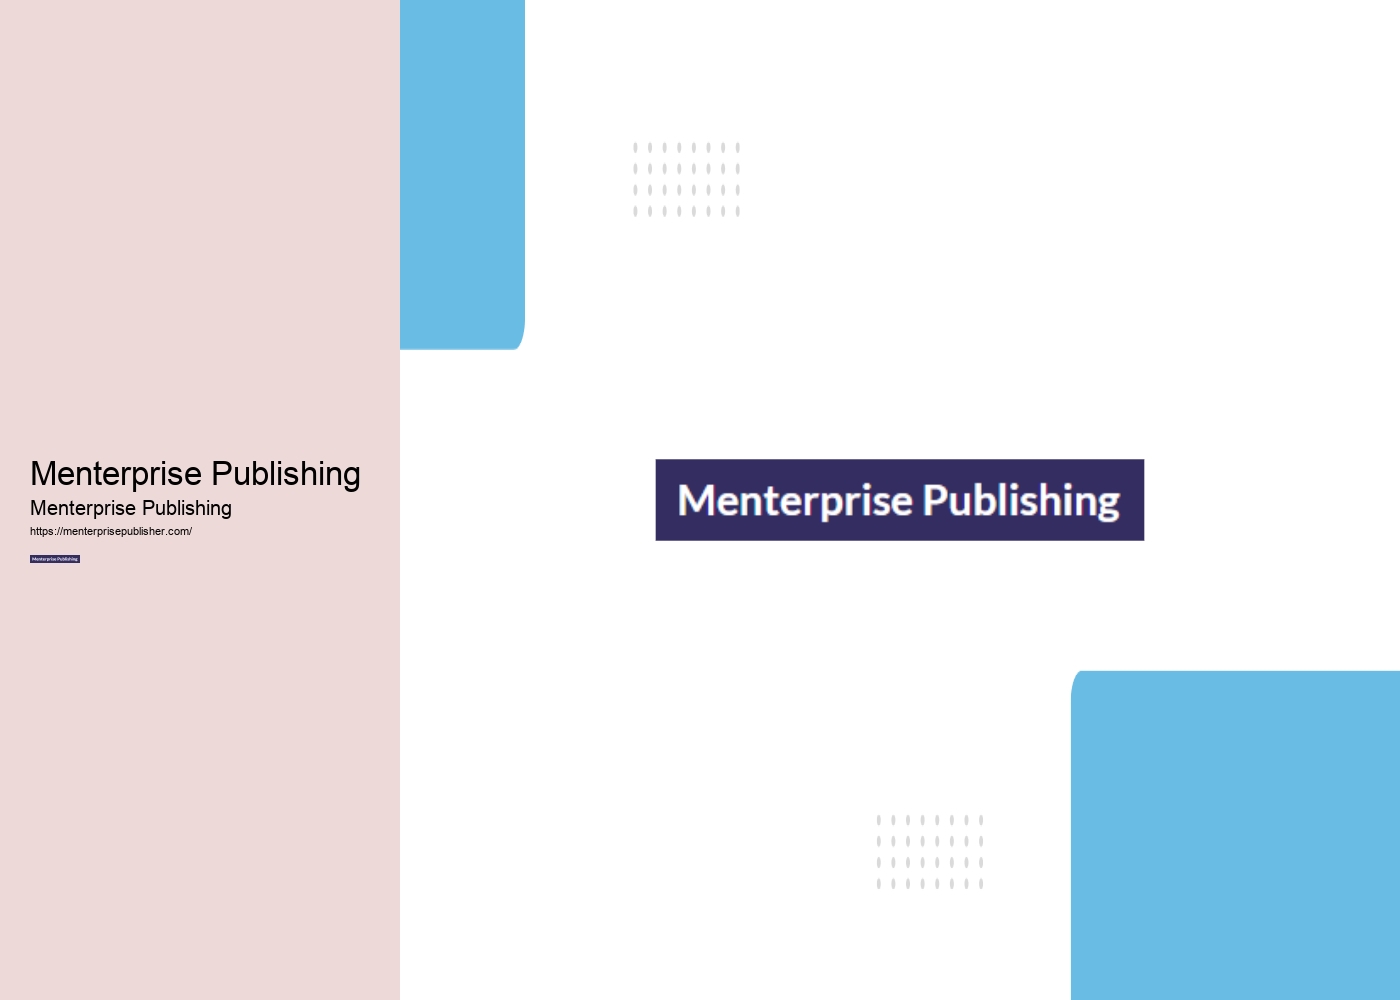 Menterprise Publishing